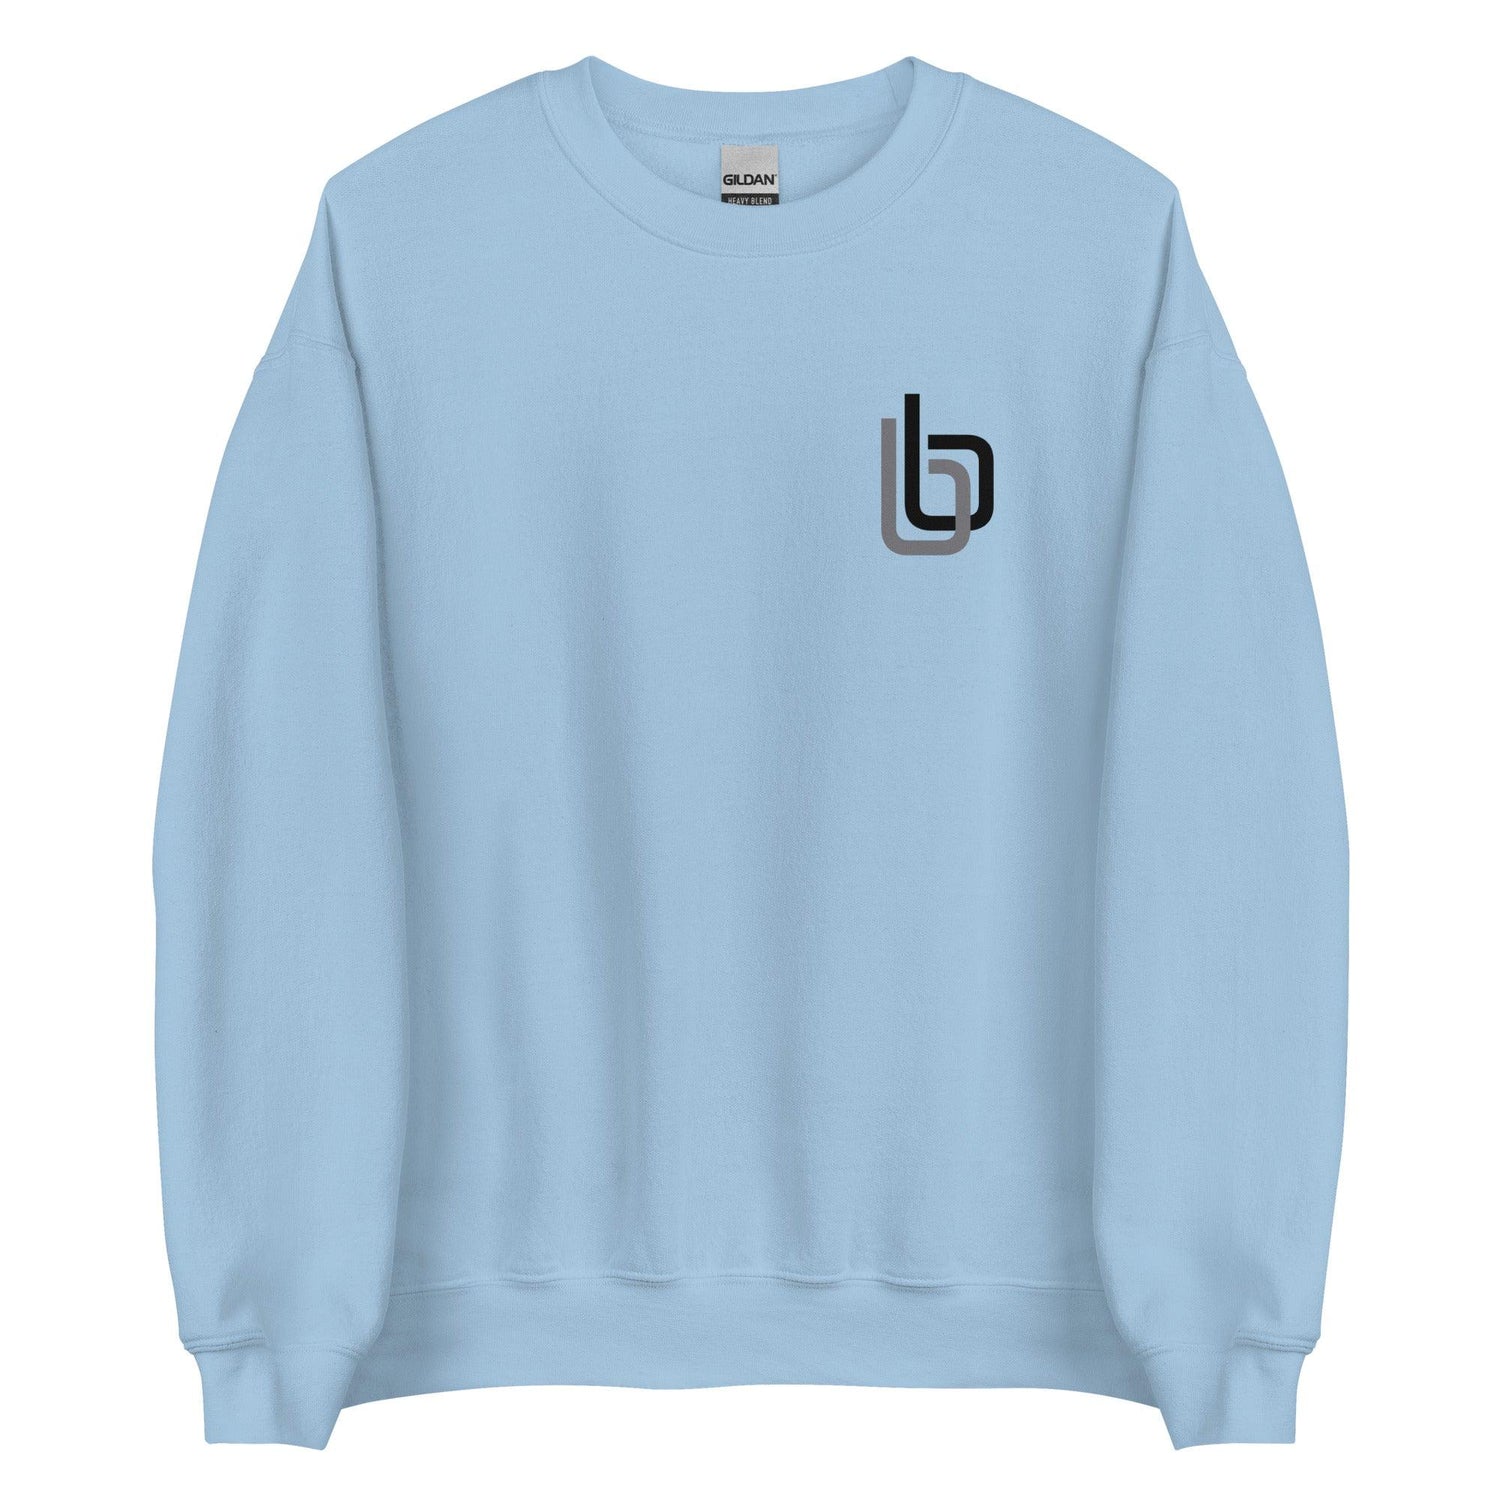 Byron Buxton “bb” Sweatshirt - Fan Arch